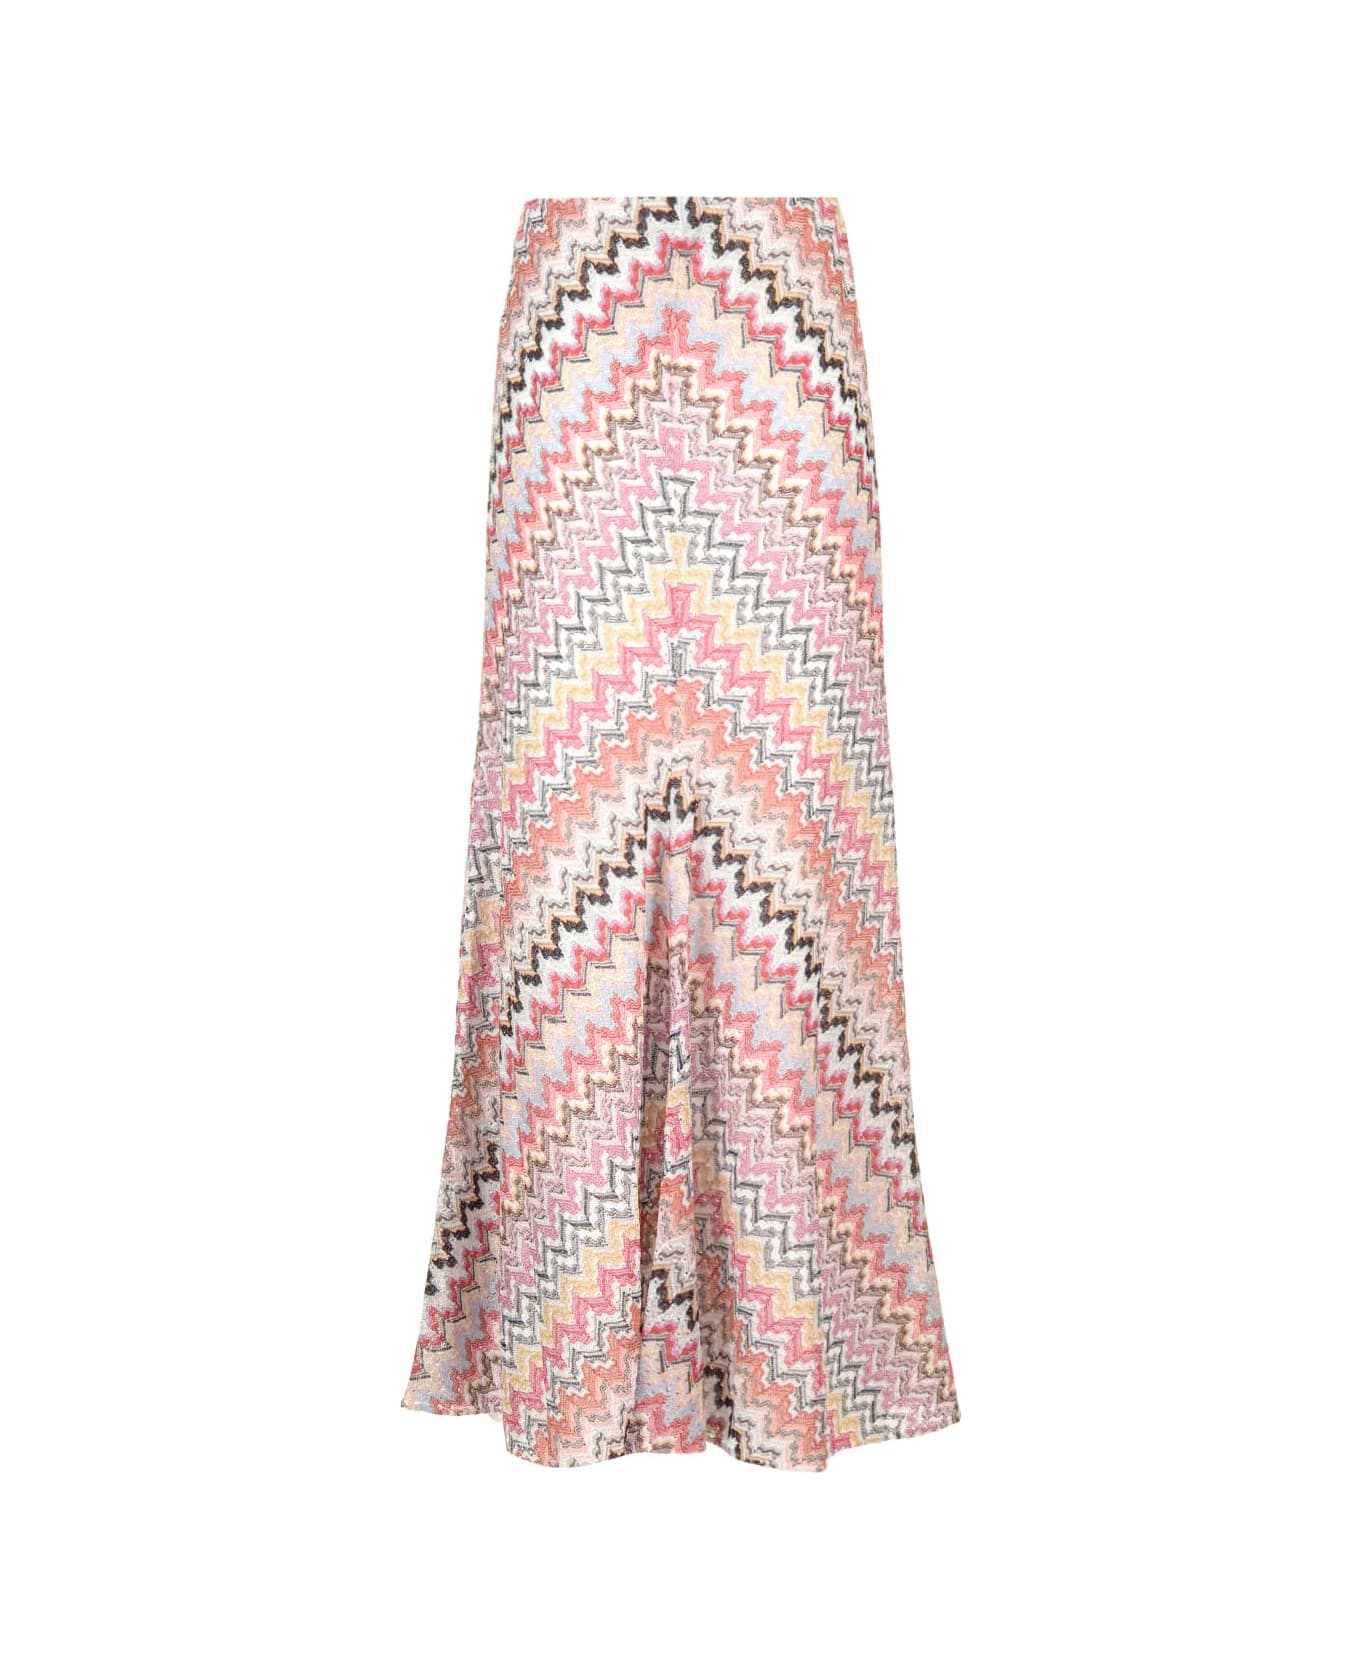 Missoni Viscose Knit Maxi Skirt - Pink/white スカート